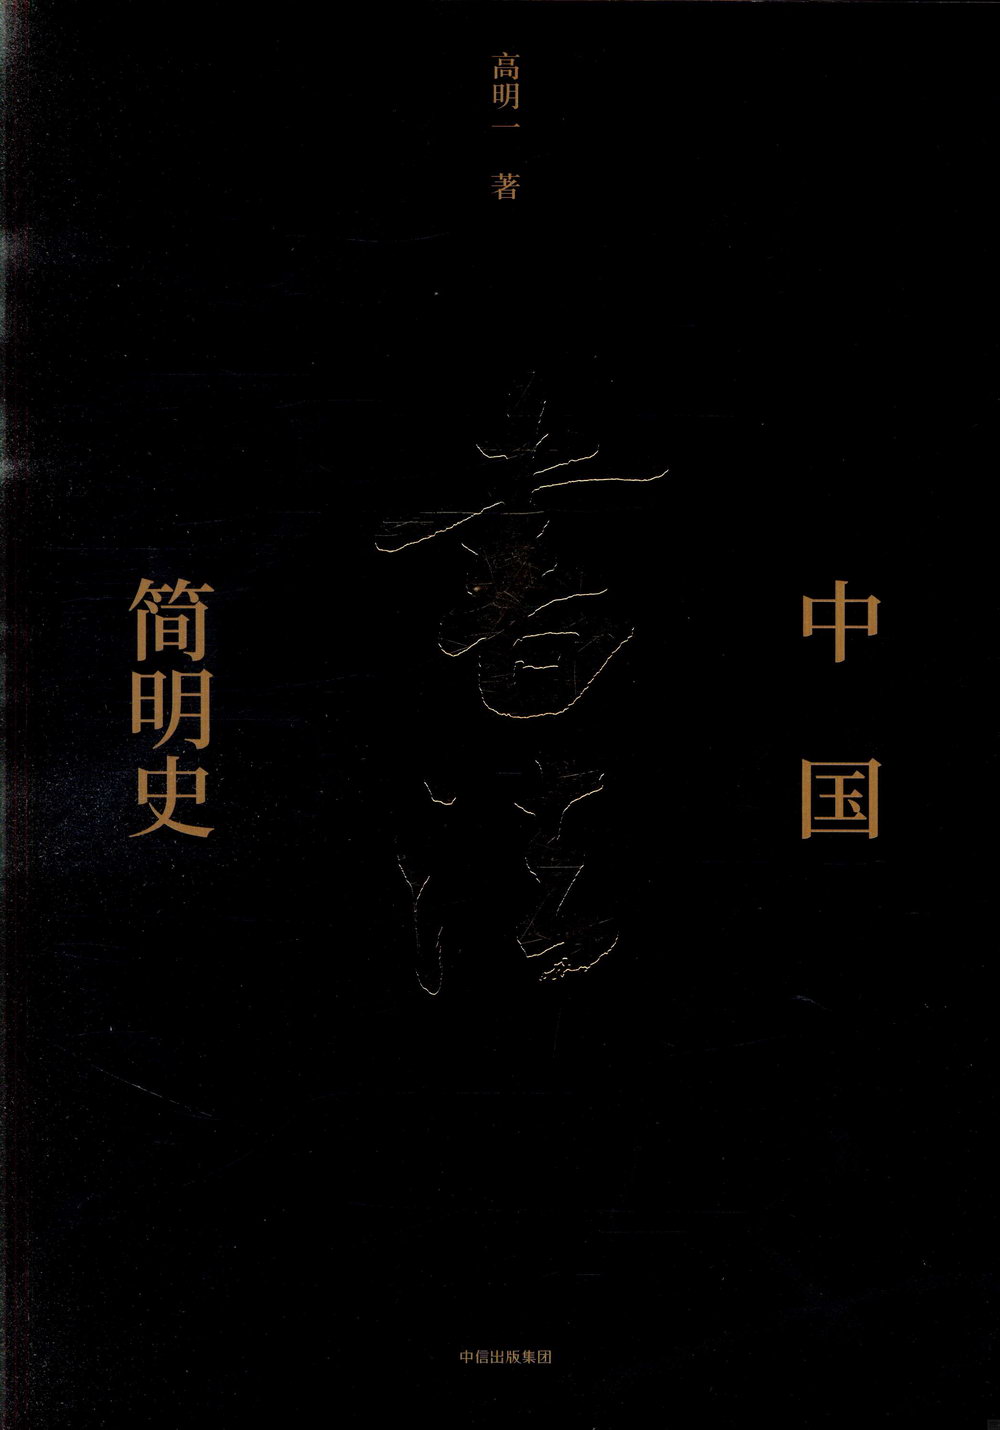 中國書法簡明史